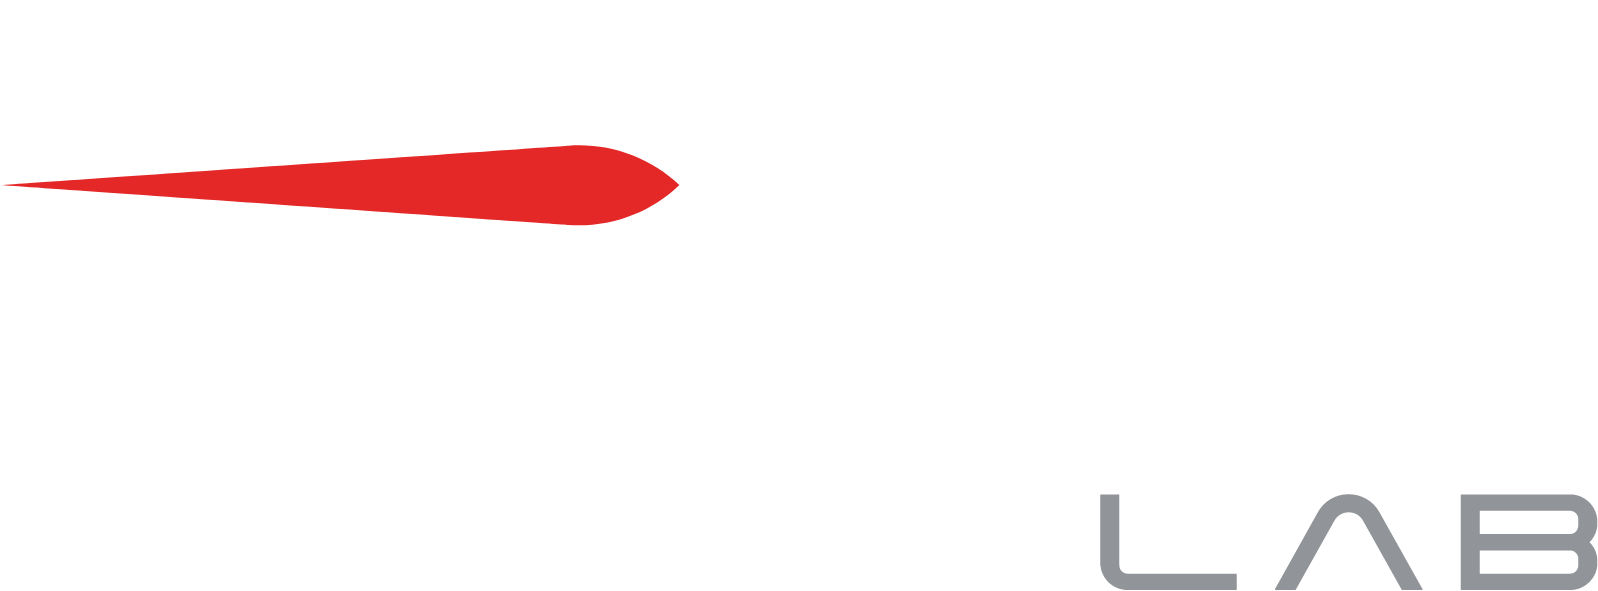 Rocket Lab logo grand pour les fonds sombres (PNG transparent)